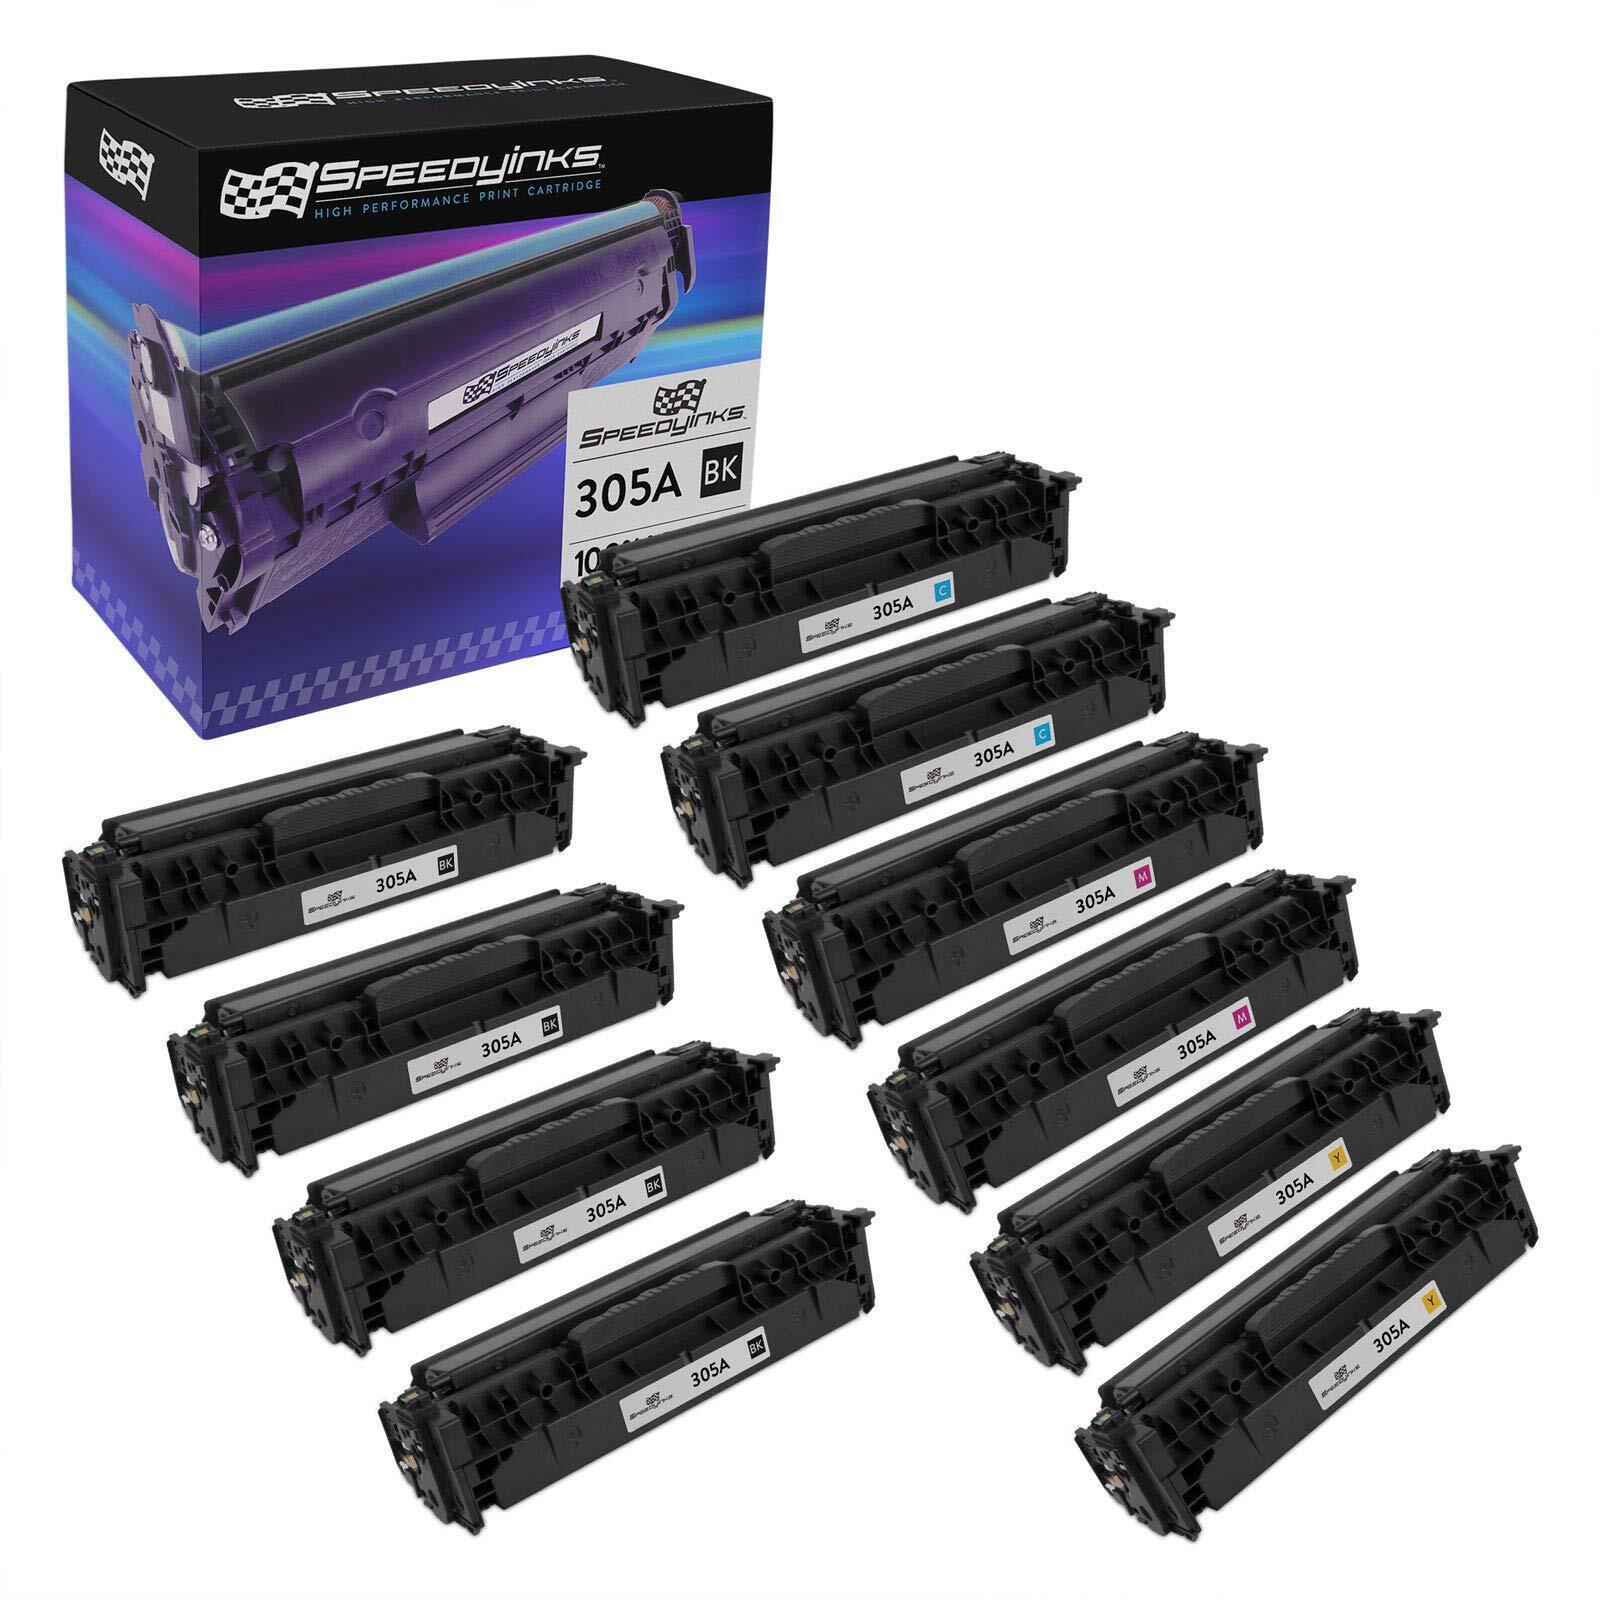 10PK Reman Toner Cartridge for HP 305A LaserJet Pro 400 Color M475dw M475dn 305X